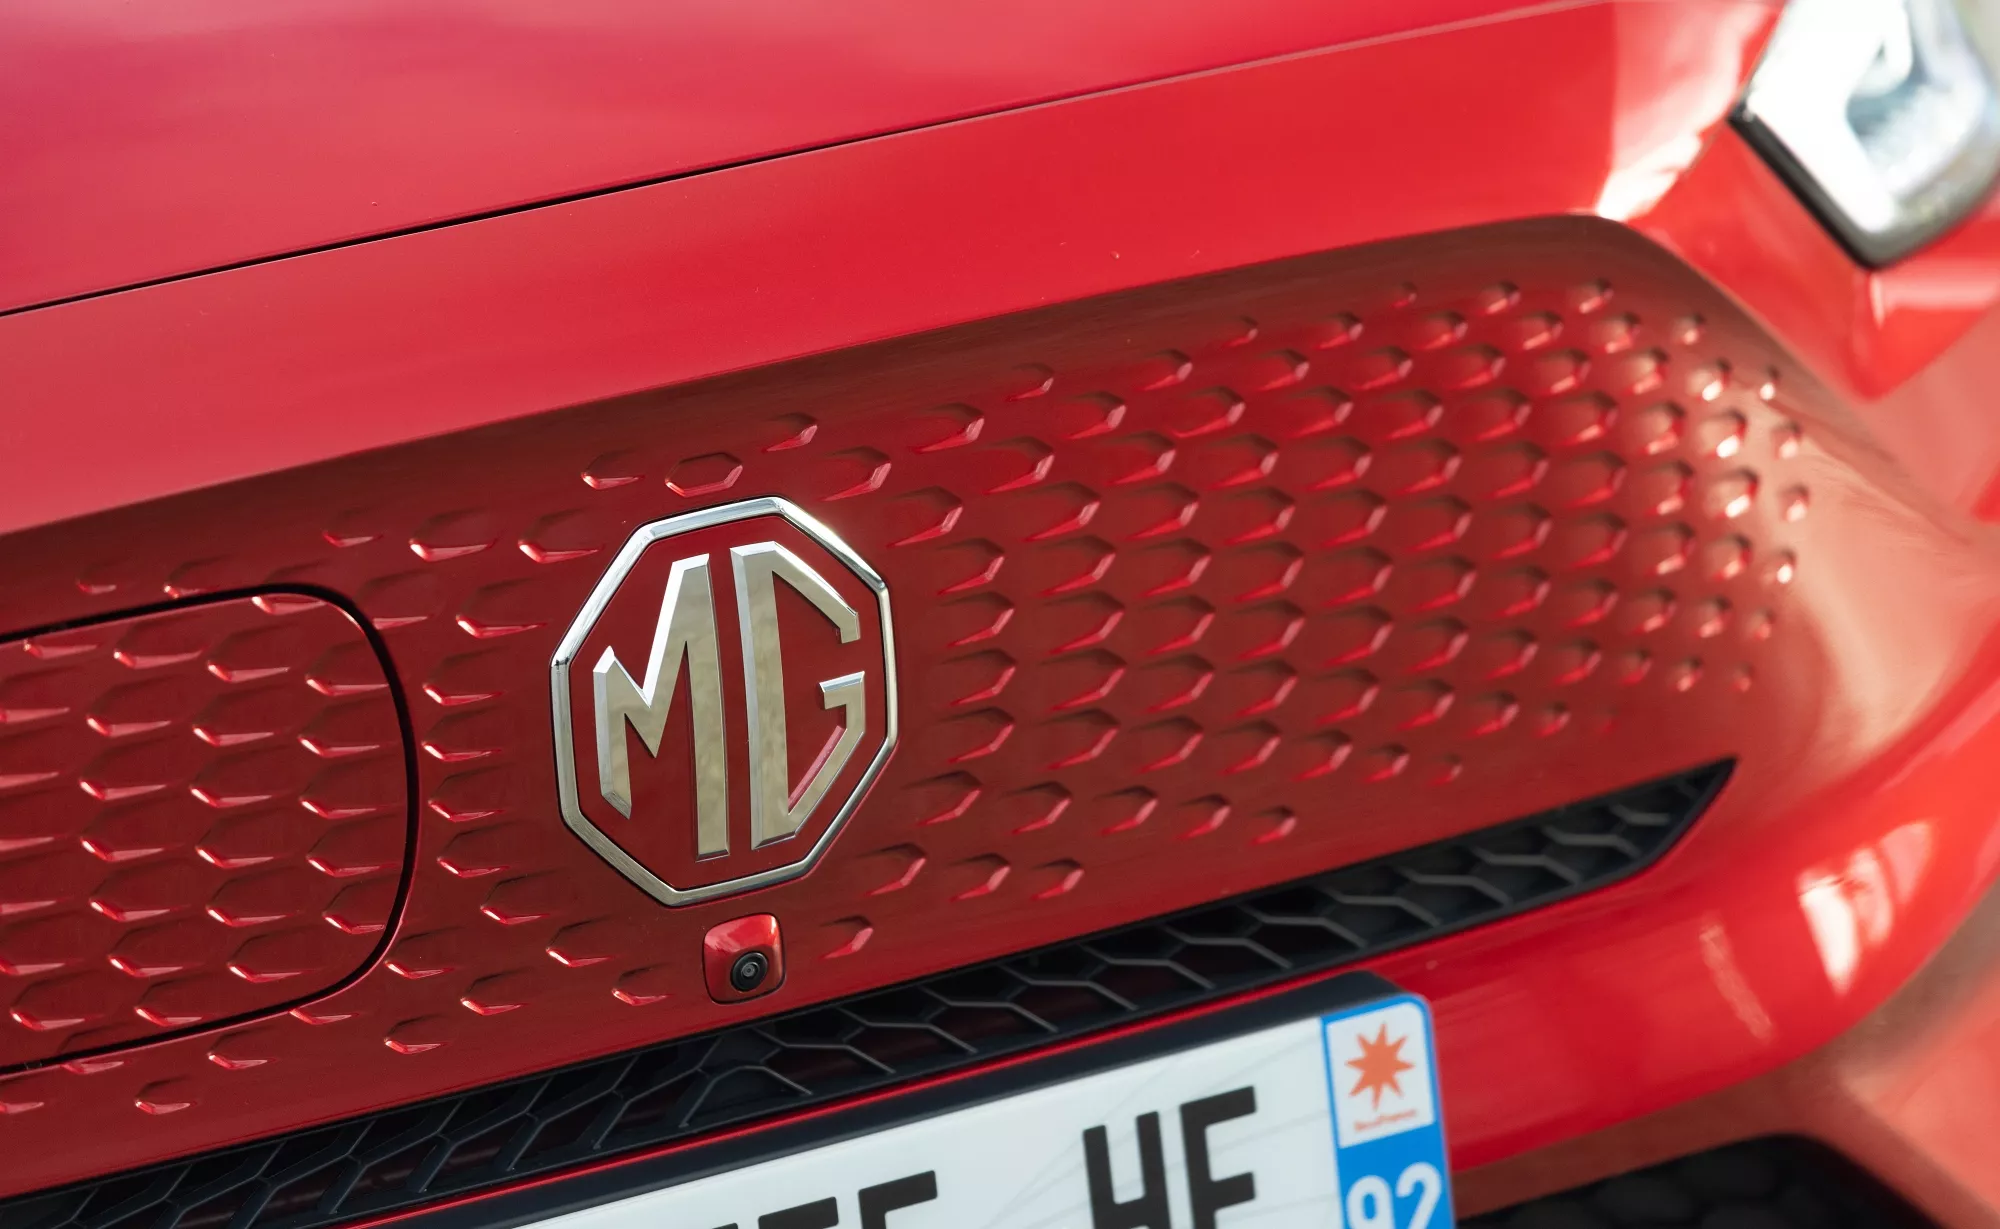 MG ya es un éxito en España. La marca ha crecido rápidamente en apenas unos años.